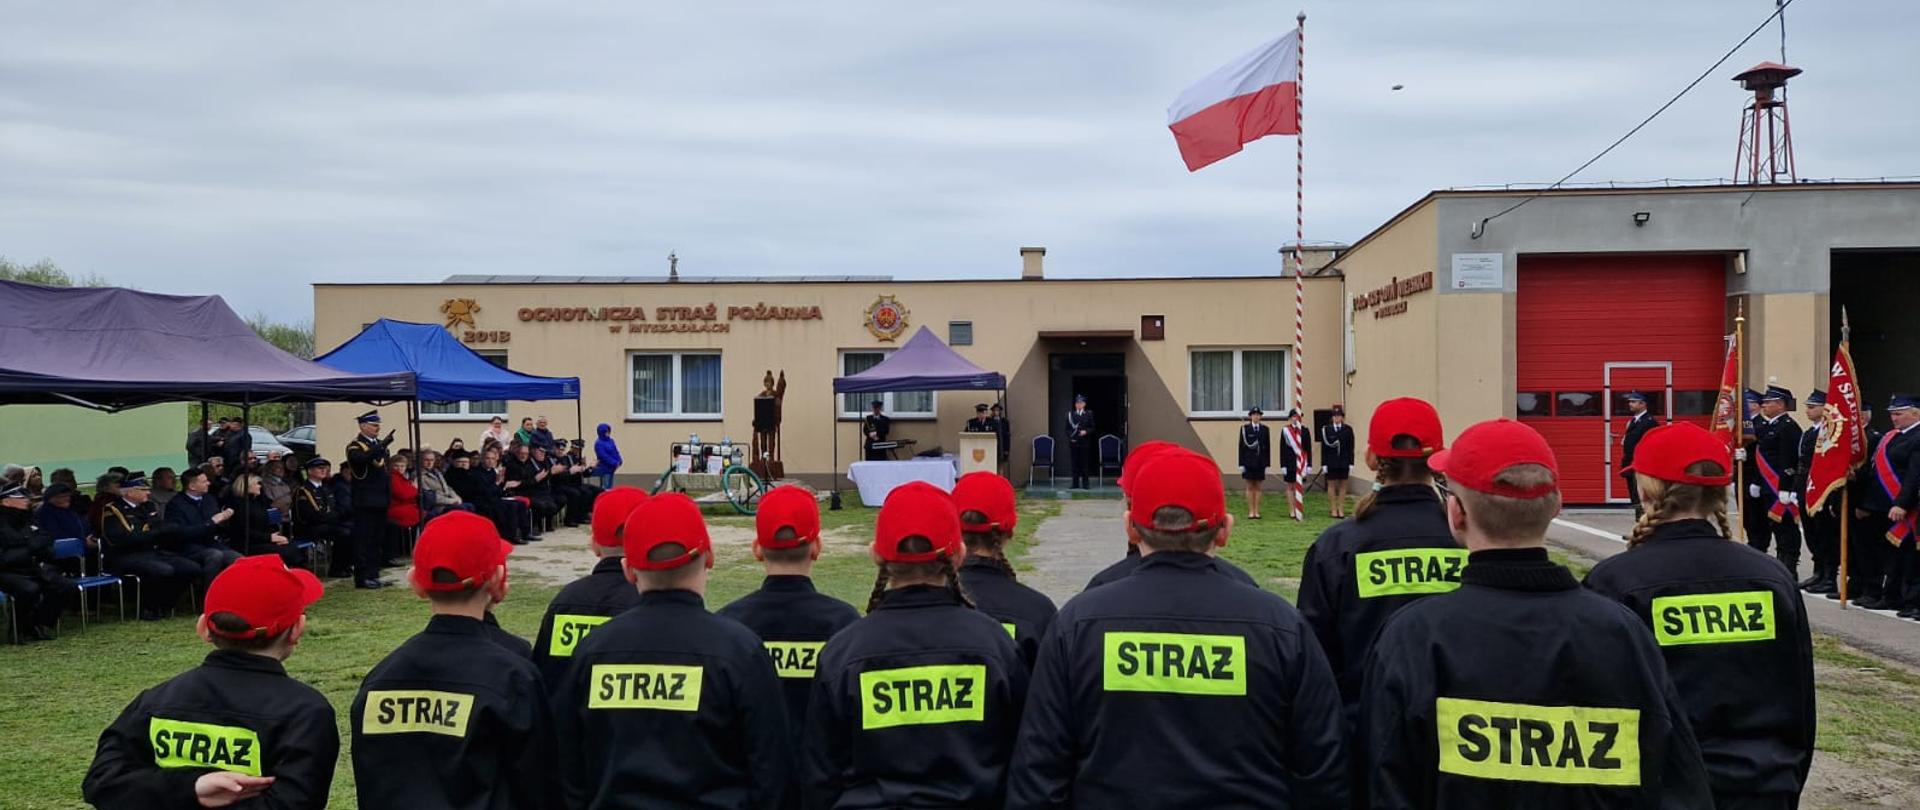 Na pierwszym planie zdjęcia widoczni są strażacy MDP. Na głowach mają czerwone czapki a na plecach żółty napis Straż. Ustawieni są przodem do uroczystości. W tle powiewa flaga Polski na maszcie.